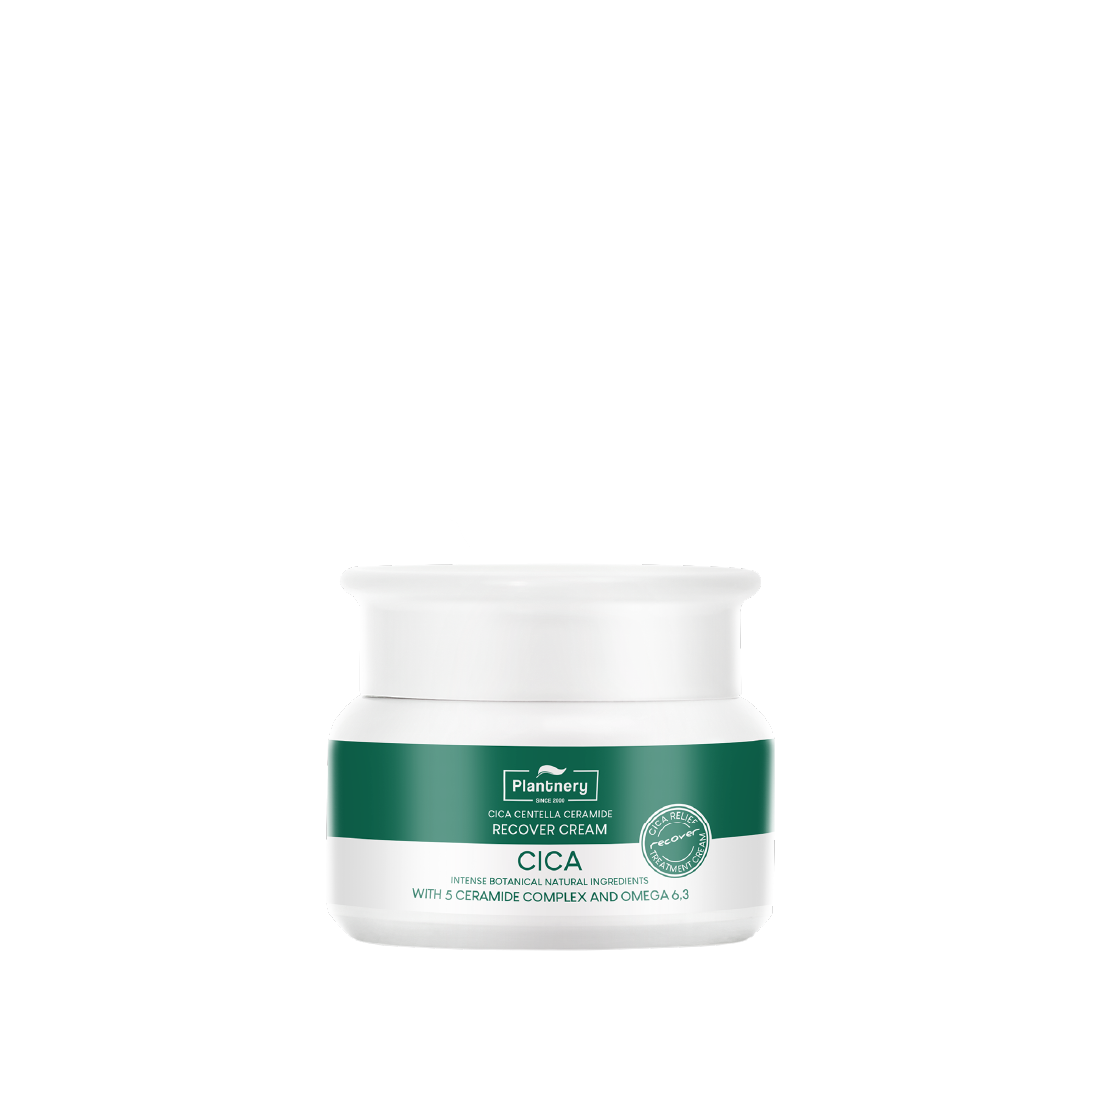 Plantnery Cica Centella Ceramide Recover Cream 50g